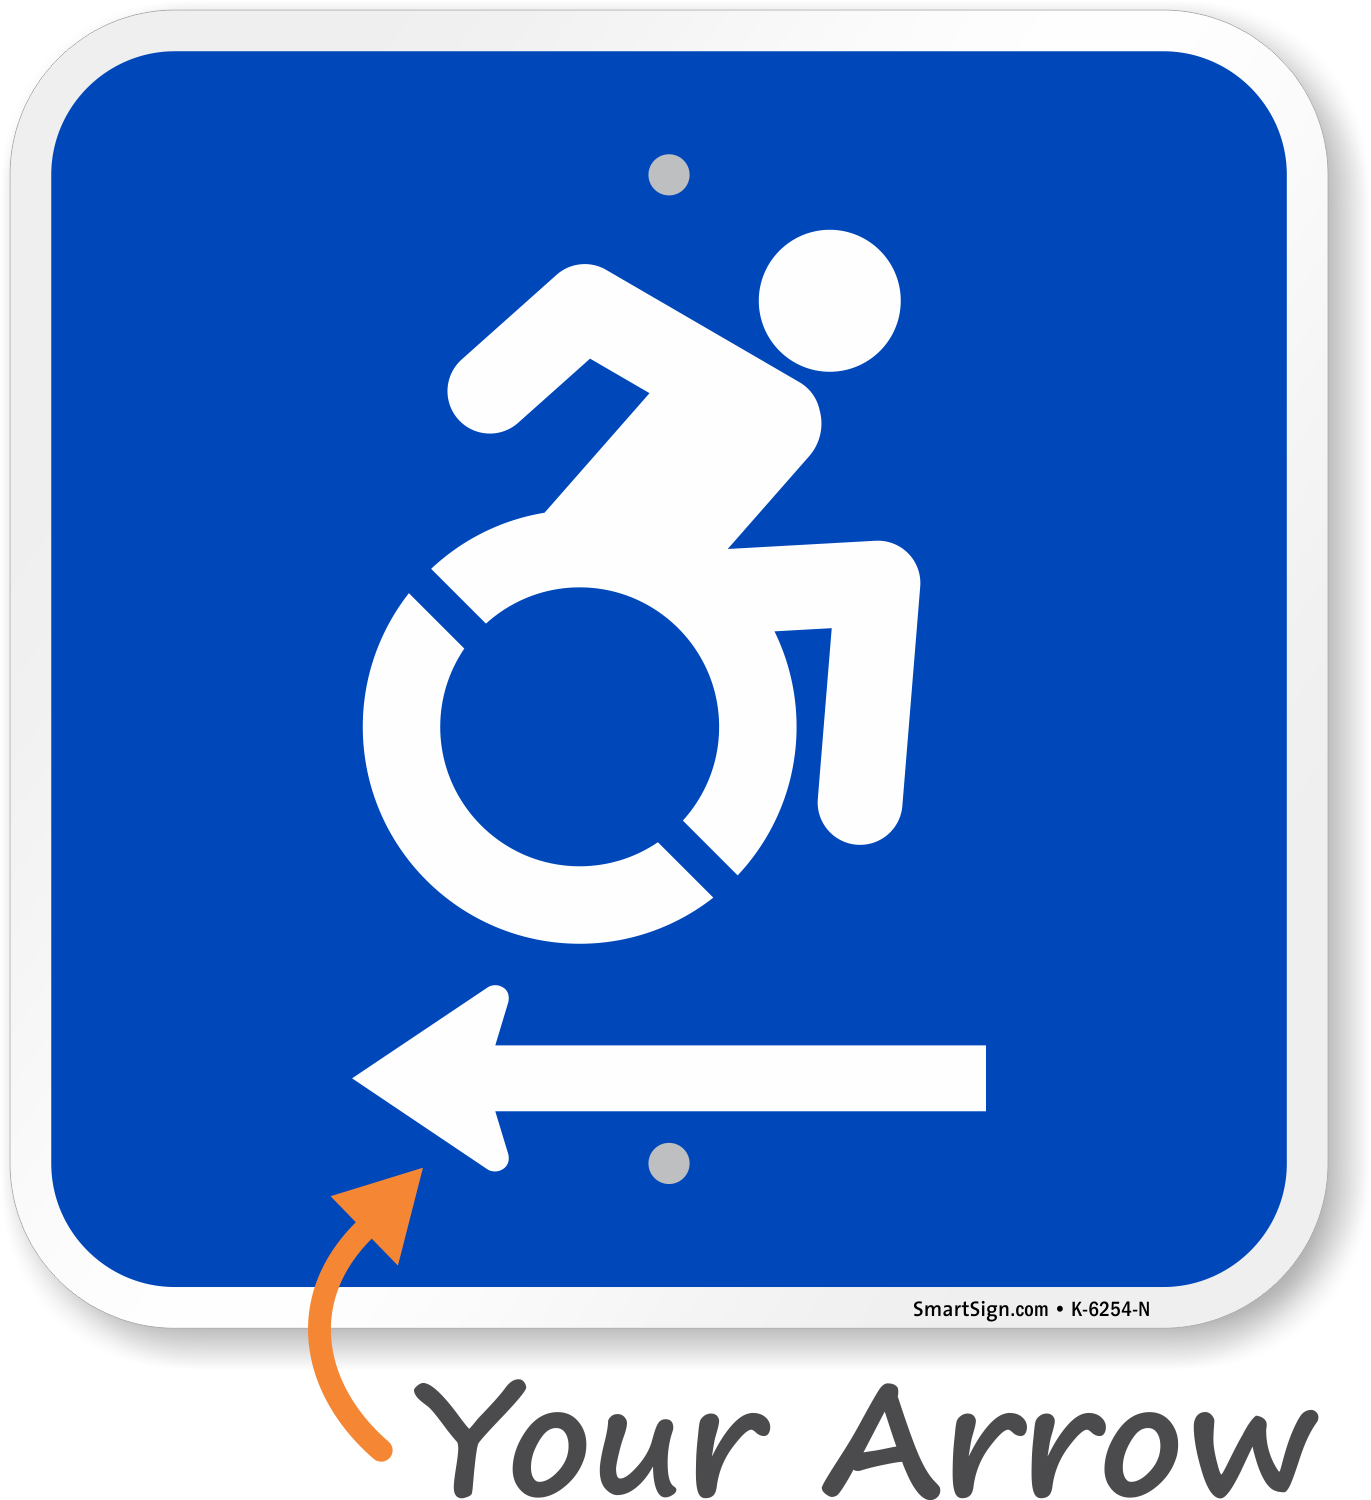 Знак инвалидной коляски. Значок инвалида. Инвалидная коляска знак. Дорожный знак инвалид на коляске. Инвалид в коляске на табличку.